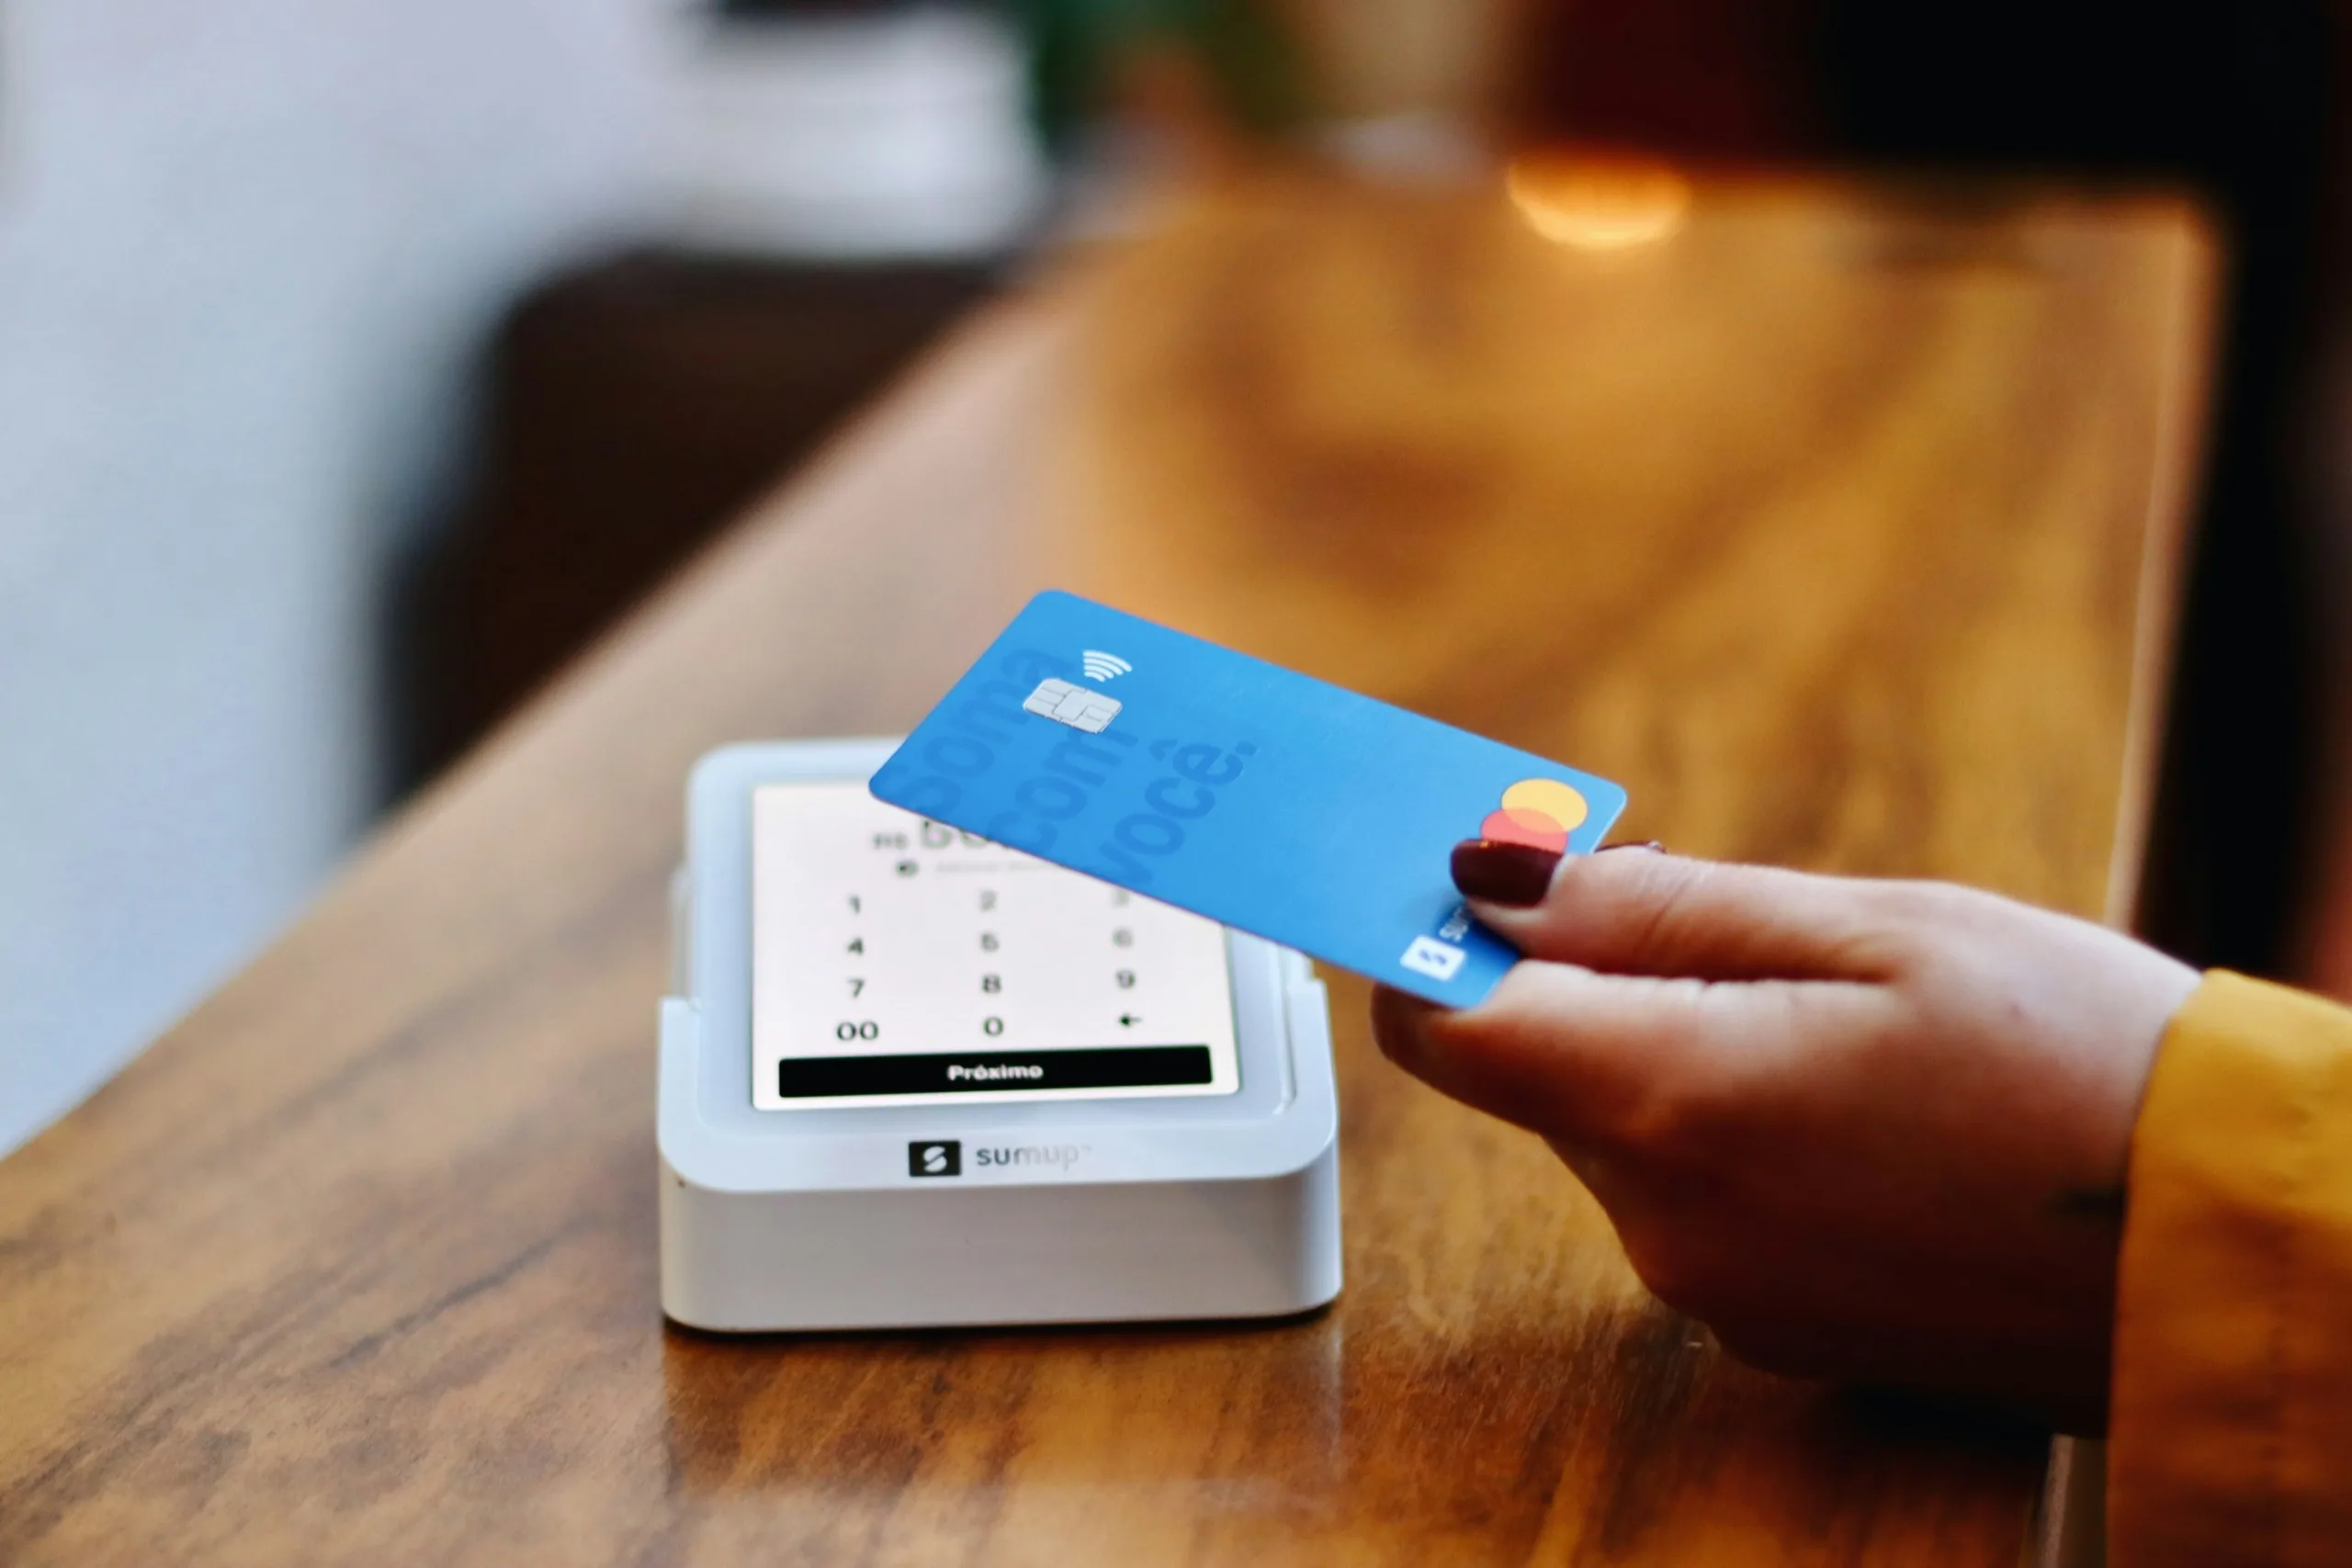 NFC : Une nouvelle ère de paiements multiples en un seul geste